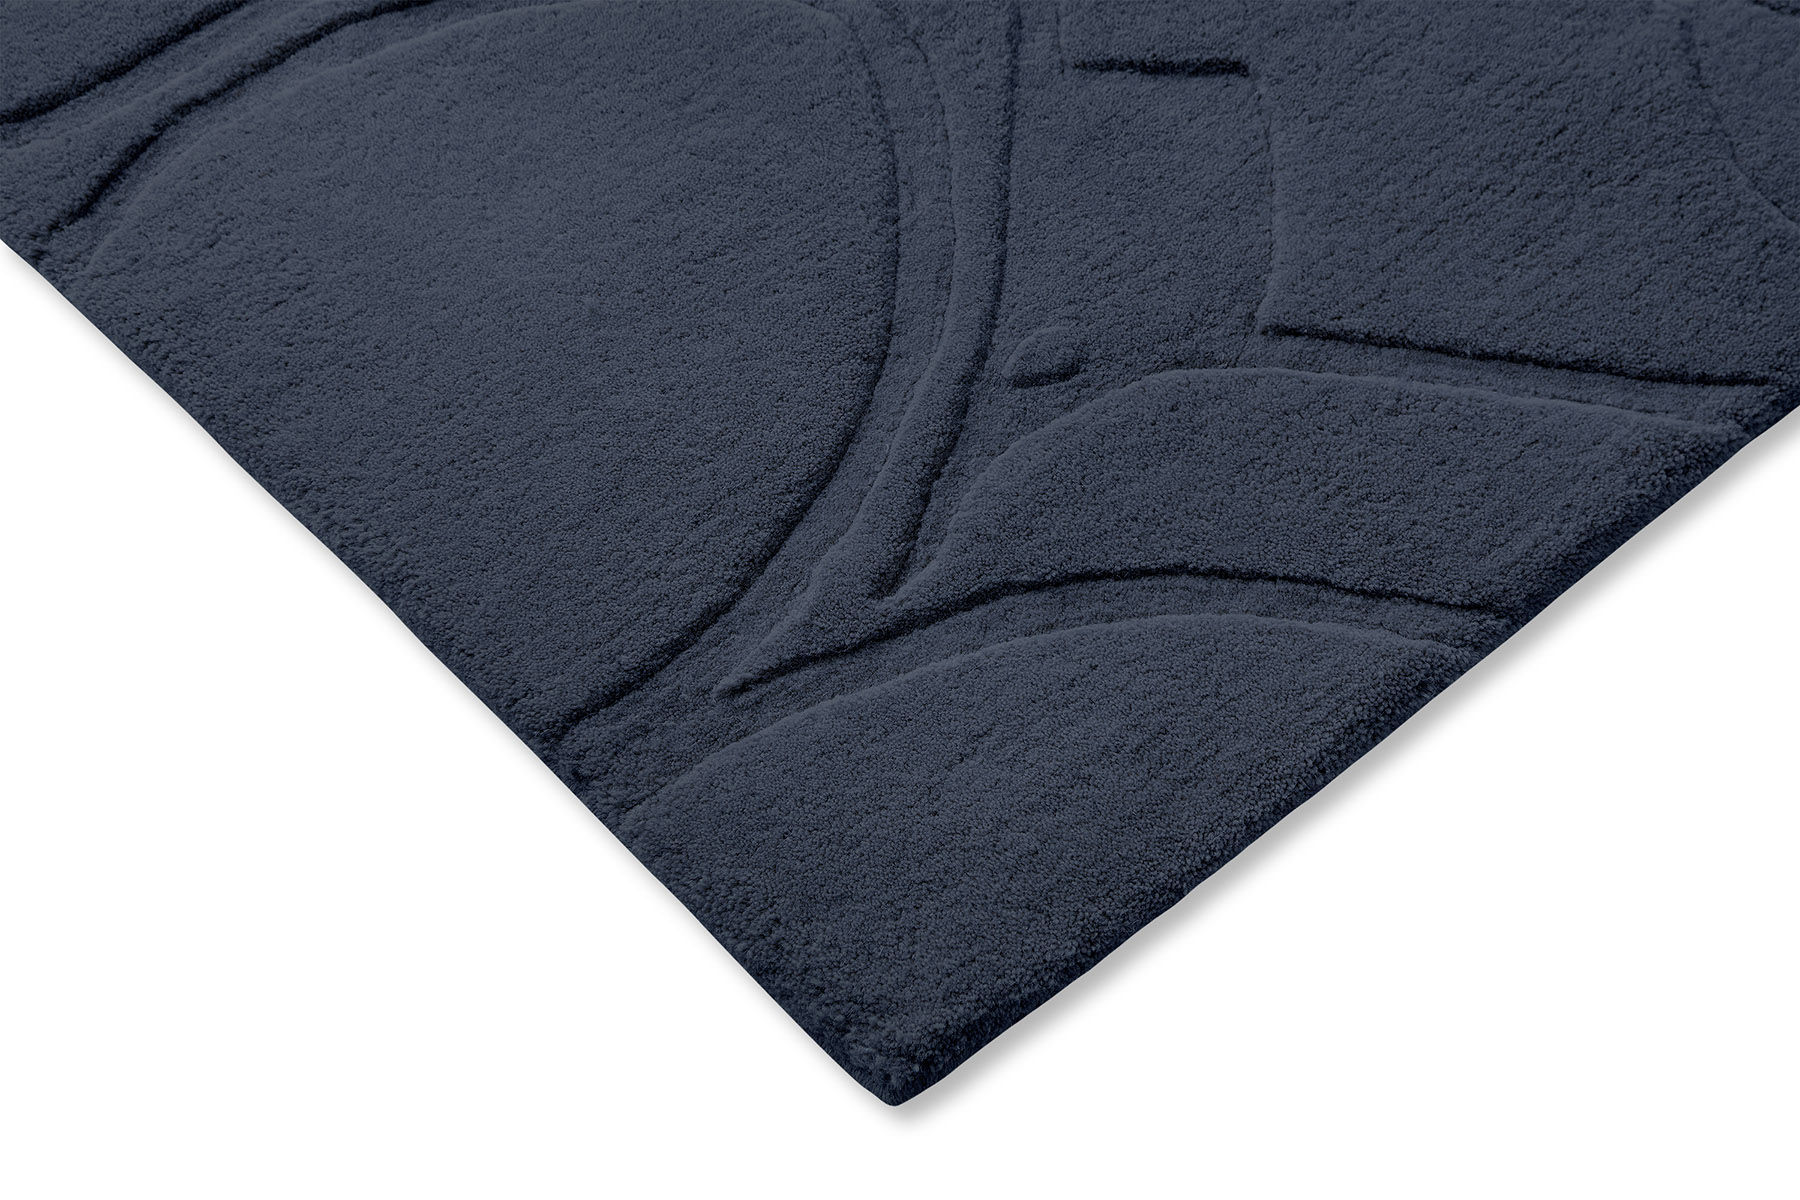 Romantic Magnolia Blue Designer Rug ☞ Size: 8' 2" x 11' 6" (250 x 350 cm)